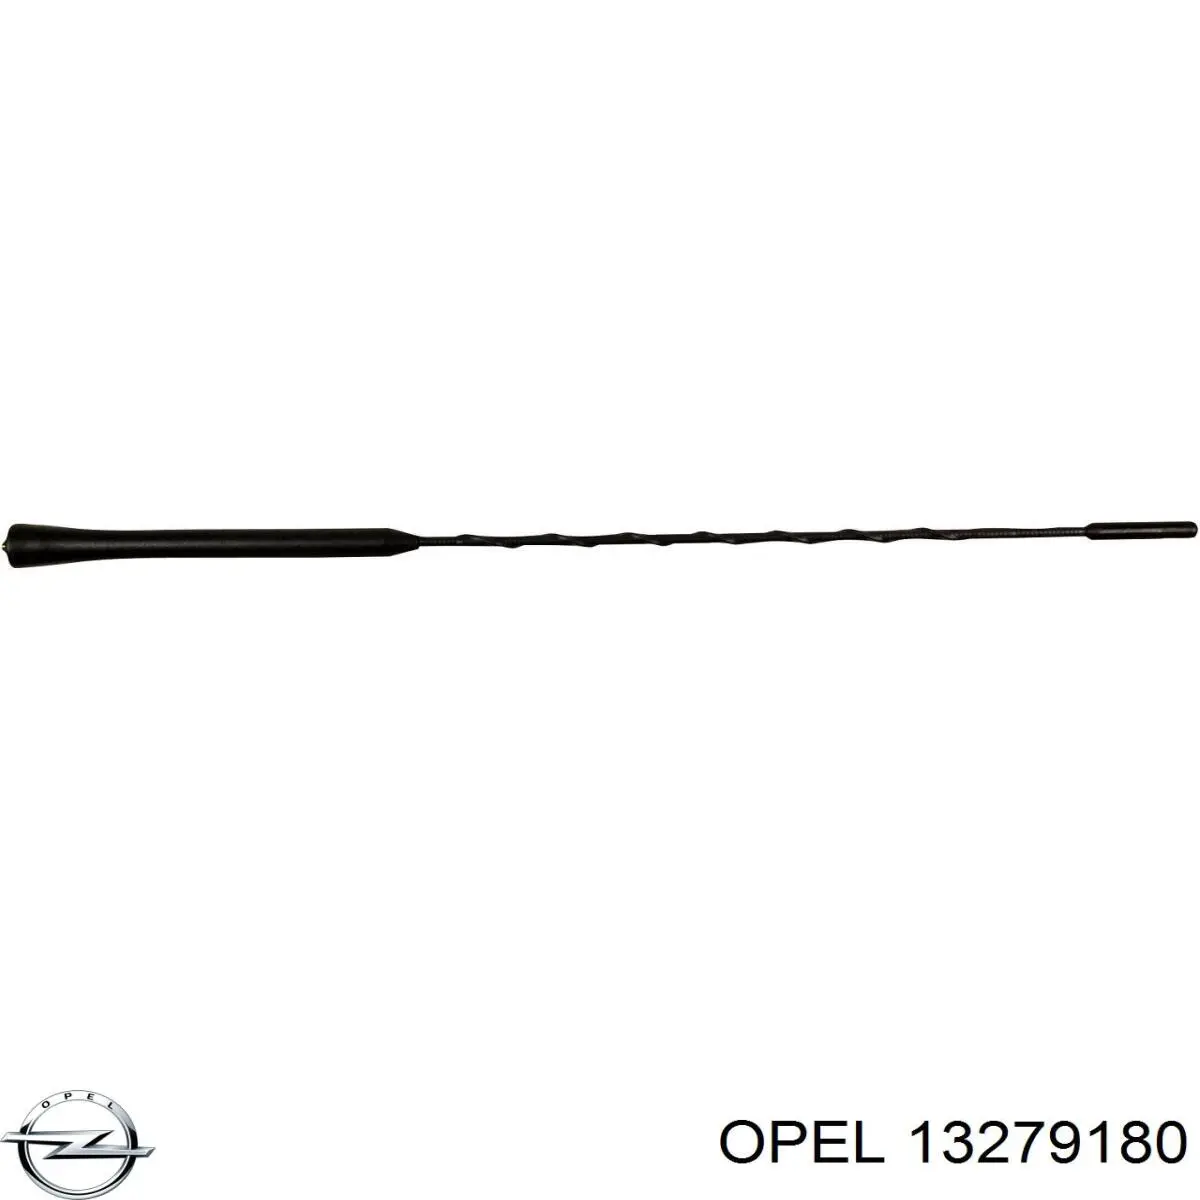 13279180 Opel шток антенны